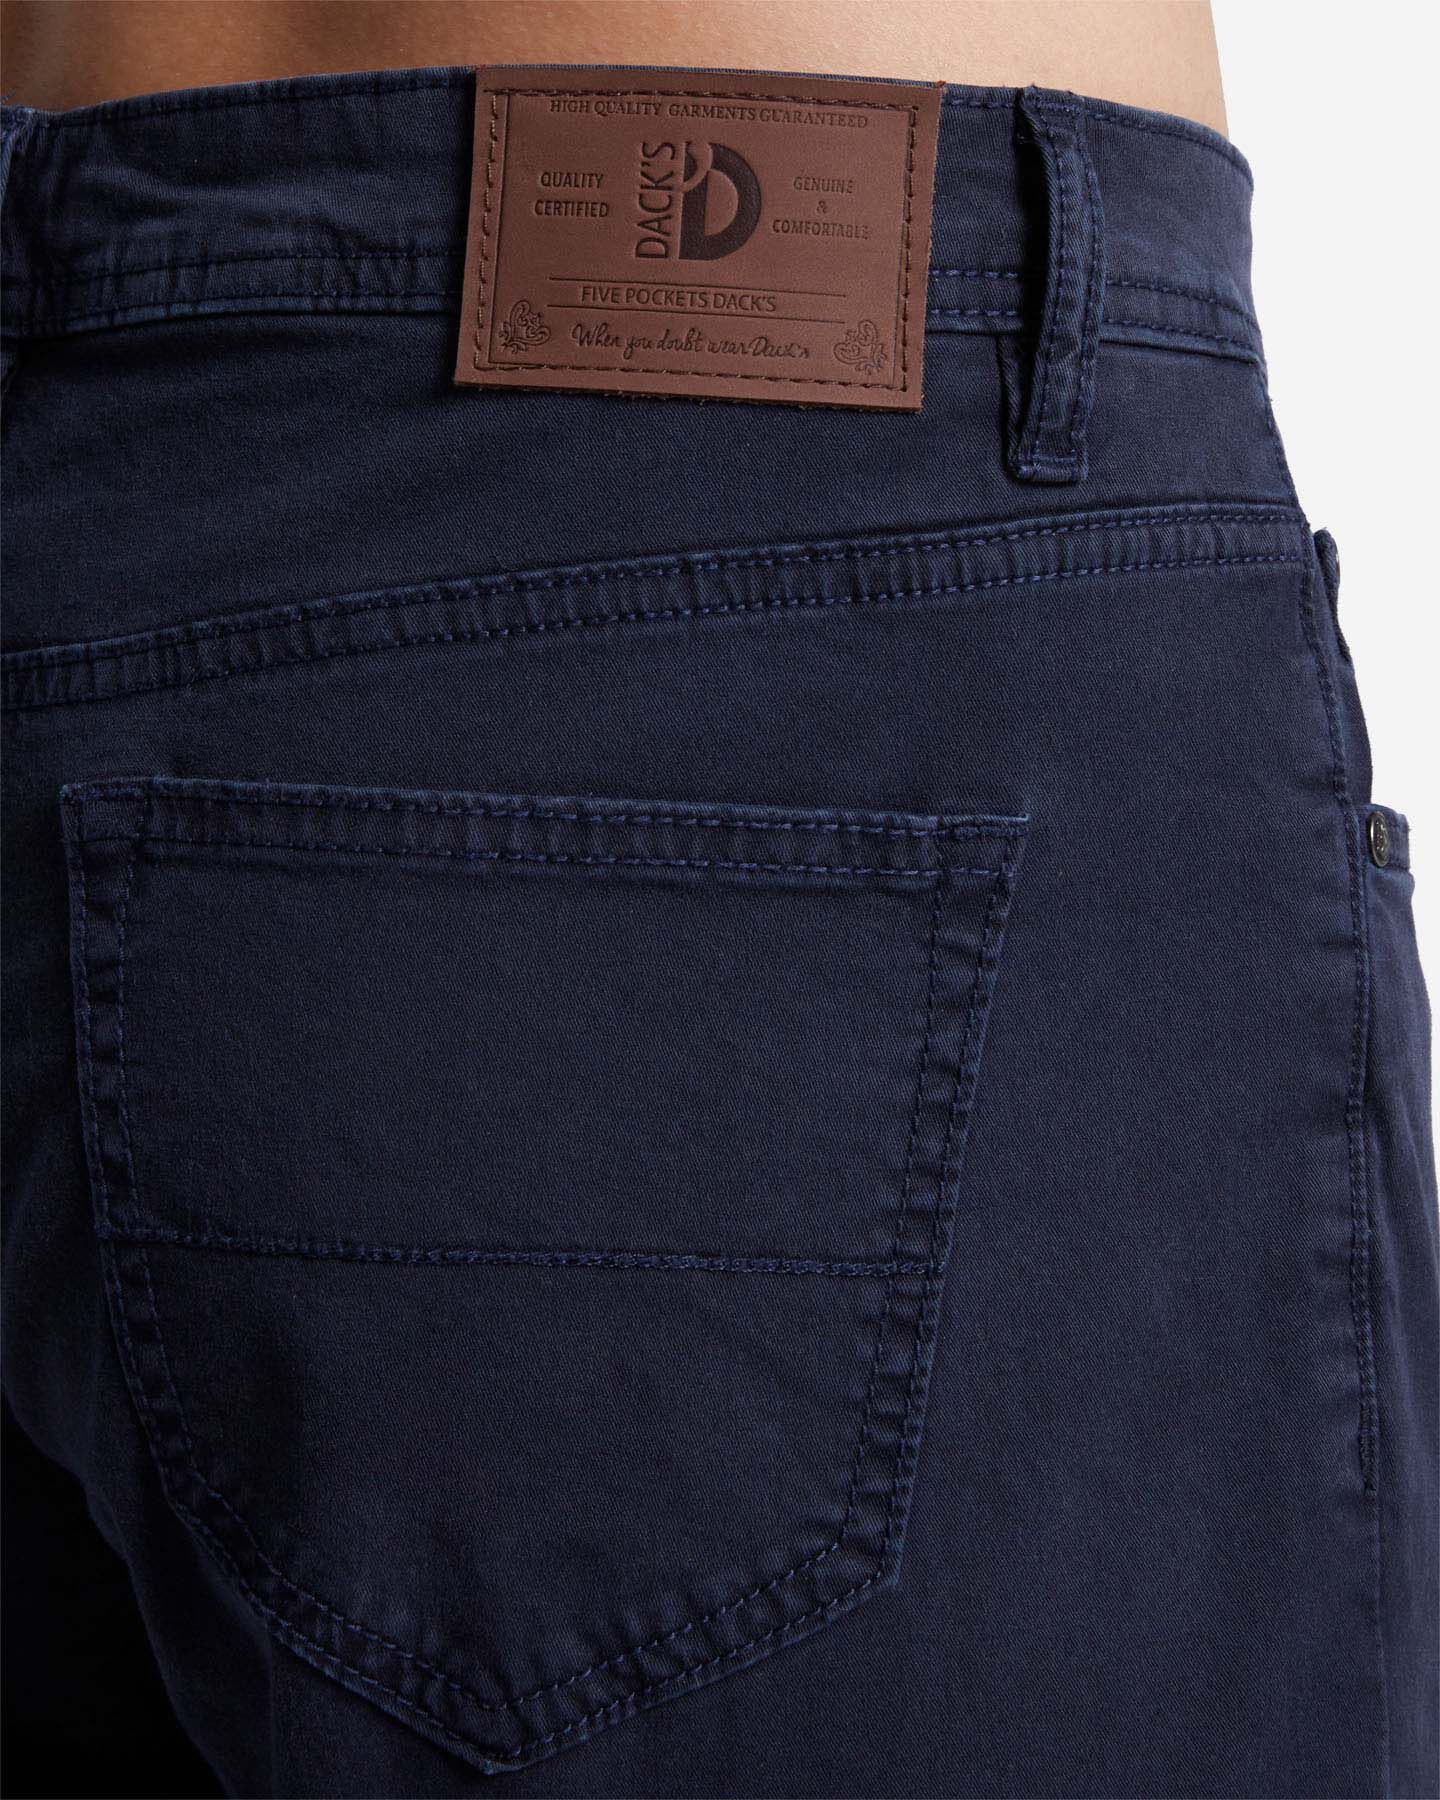  Pantalone DACK'S ESSENTIAL M S4129745|522|44 scatto 3